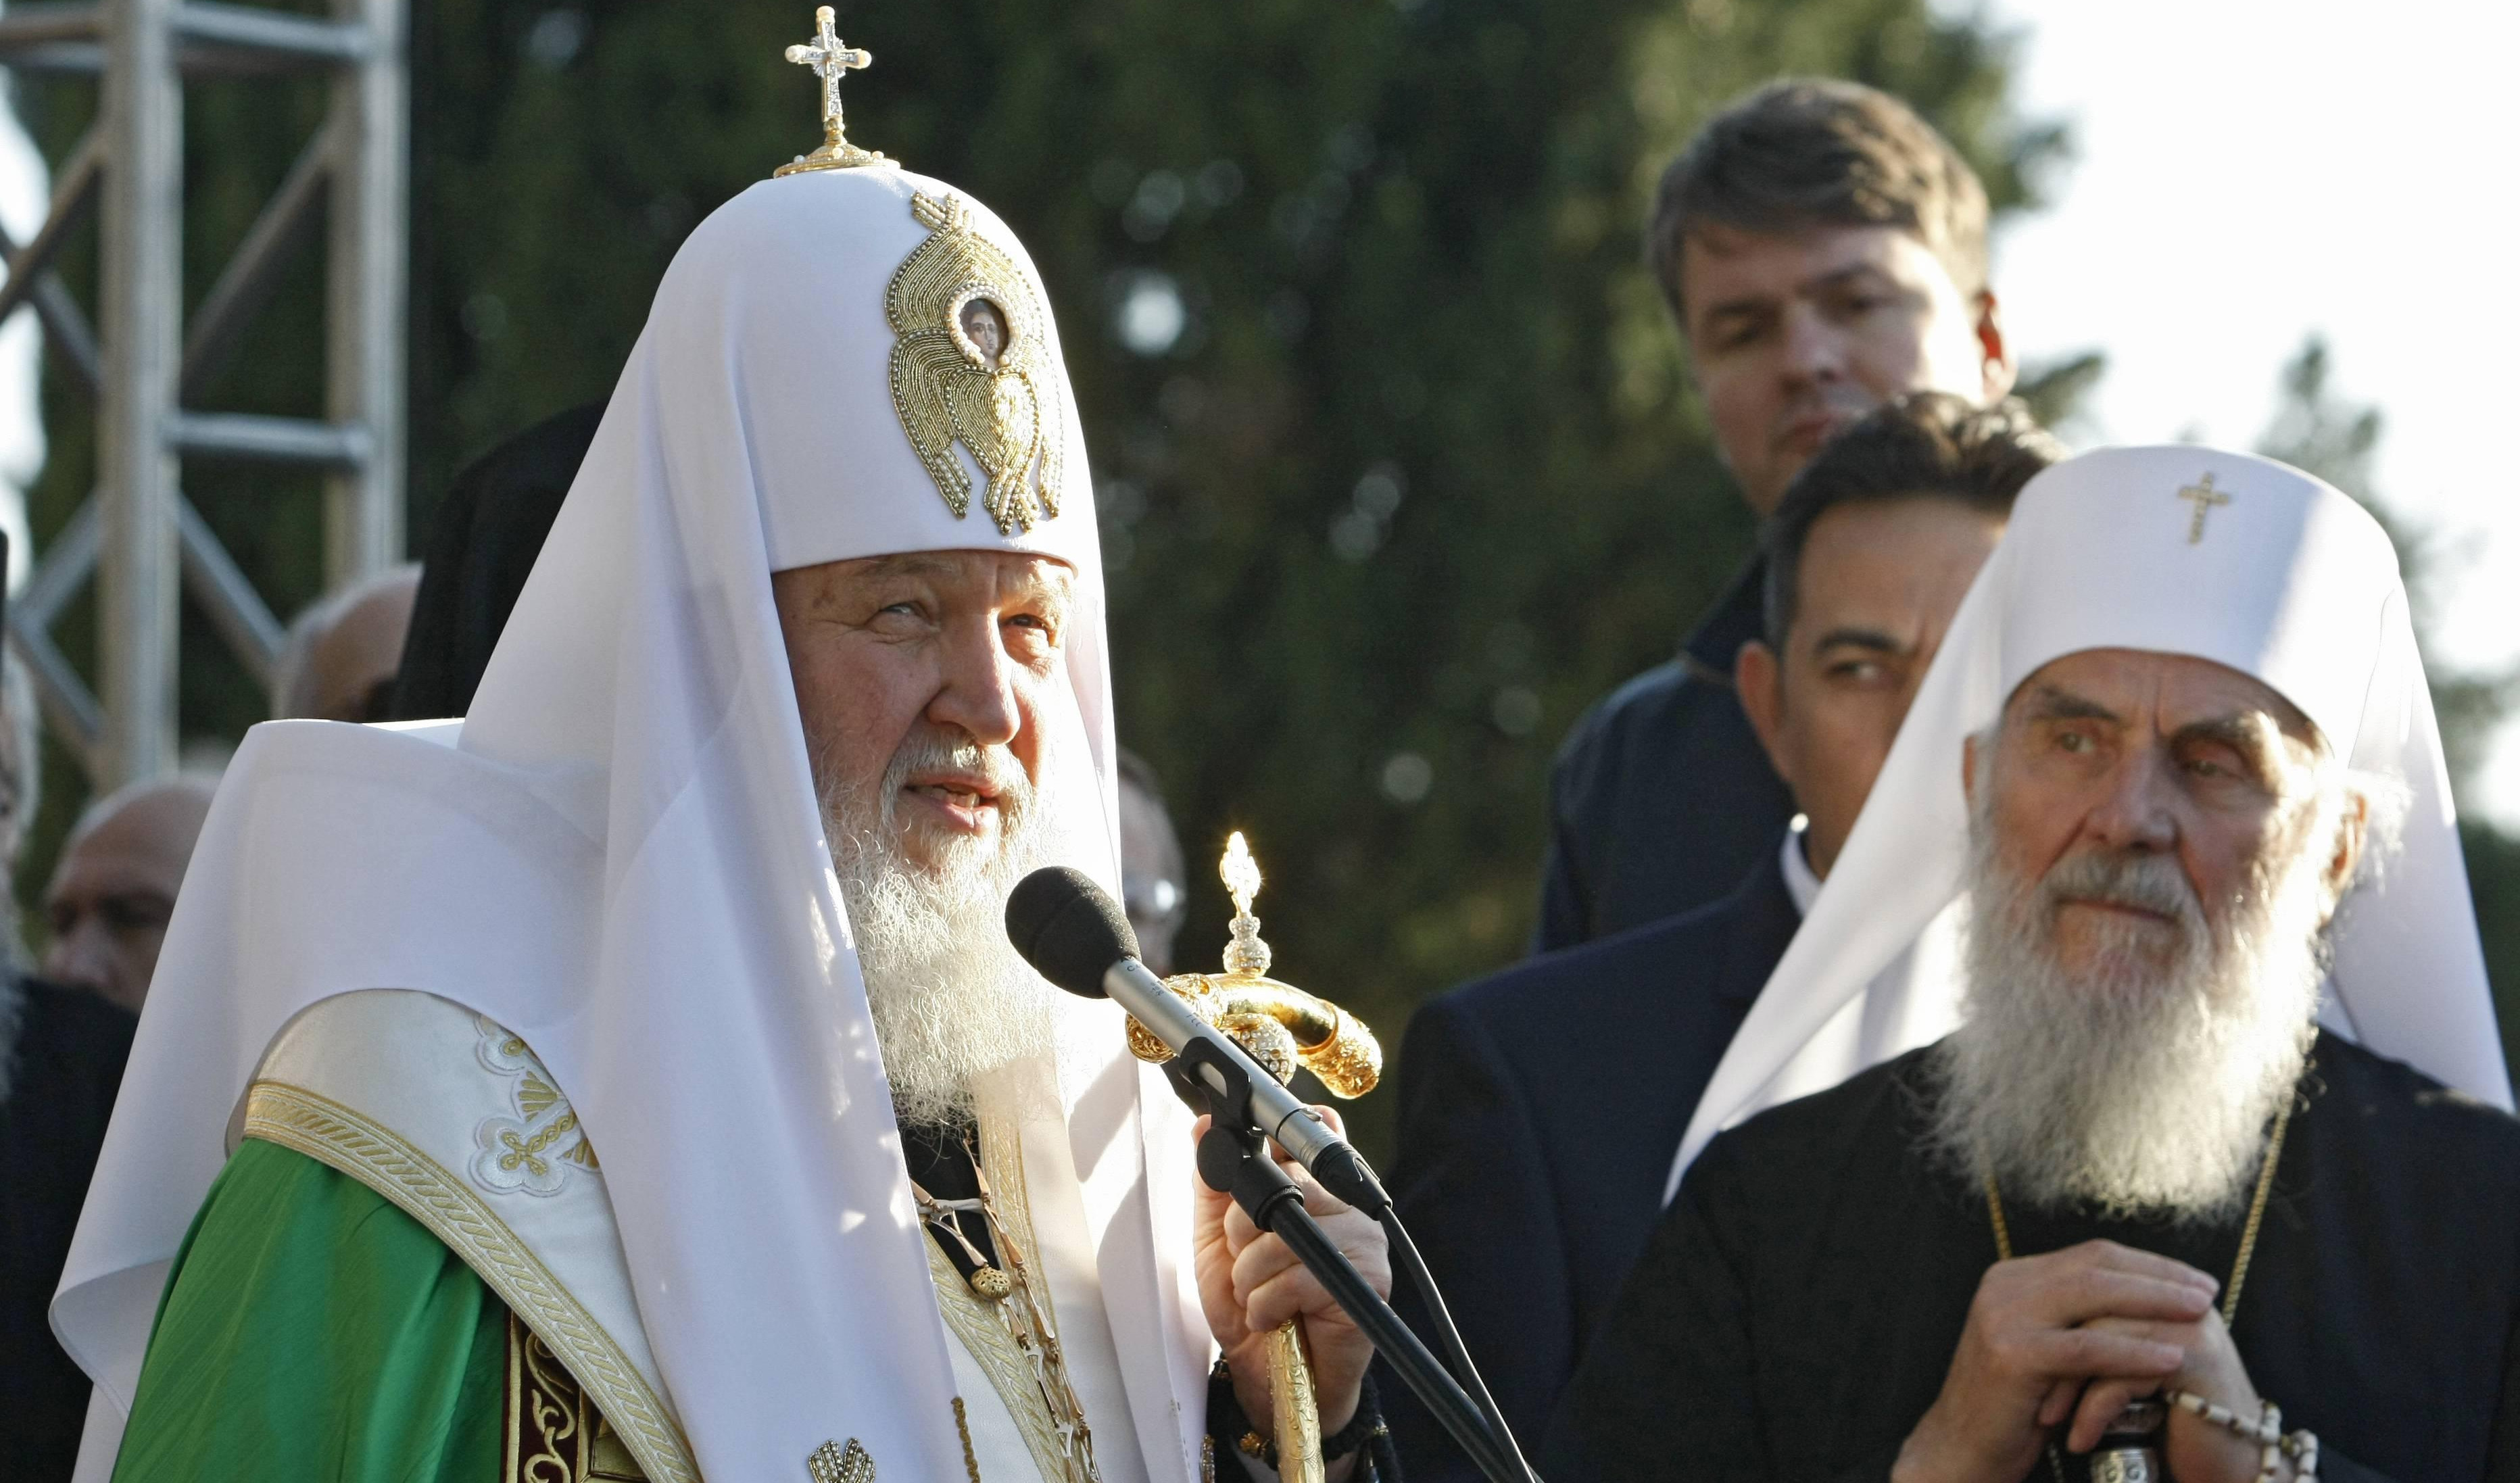 RUSKA CRKVA O PATRIJARHU IRINEJU: Bio je verni prijatelj Rusije, čekao je zajedničko osvećenje Hrama sa patrijarhom Kirilom!